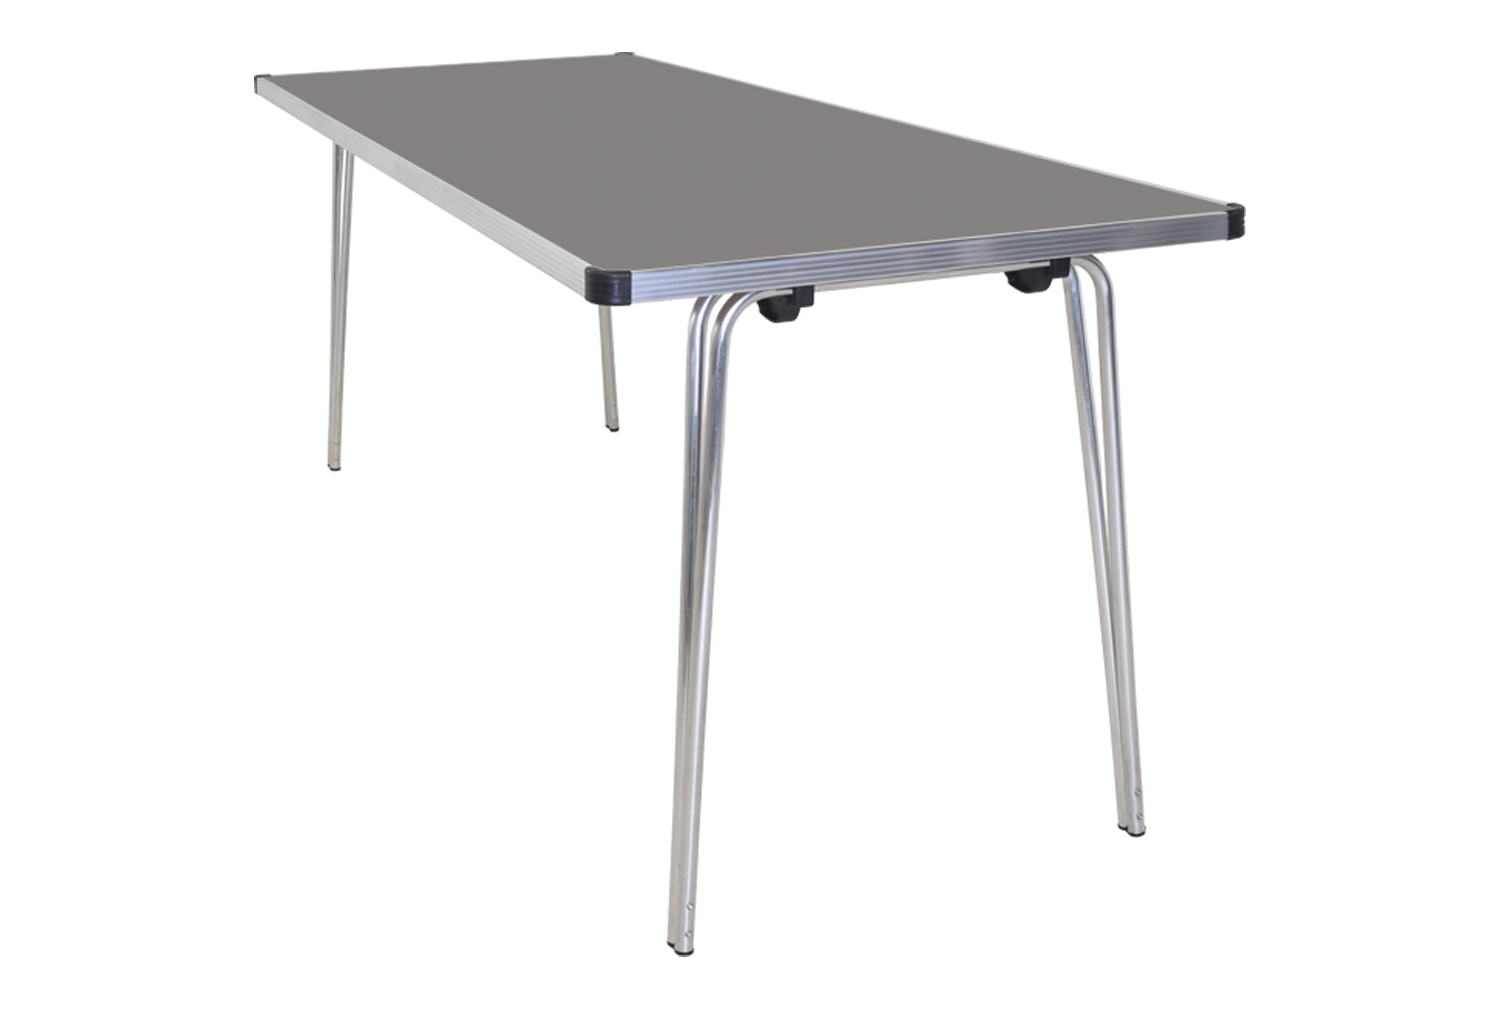 Gopak Contour Plus Folding Table, 122wx69d (cm), Storm Grey